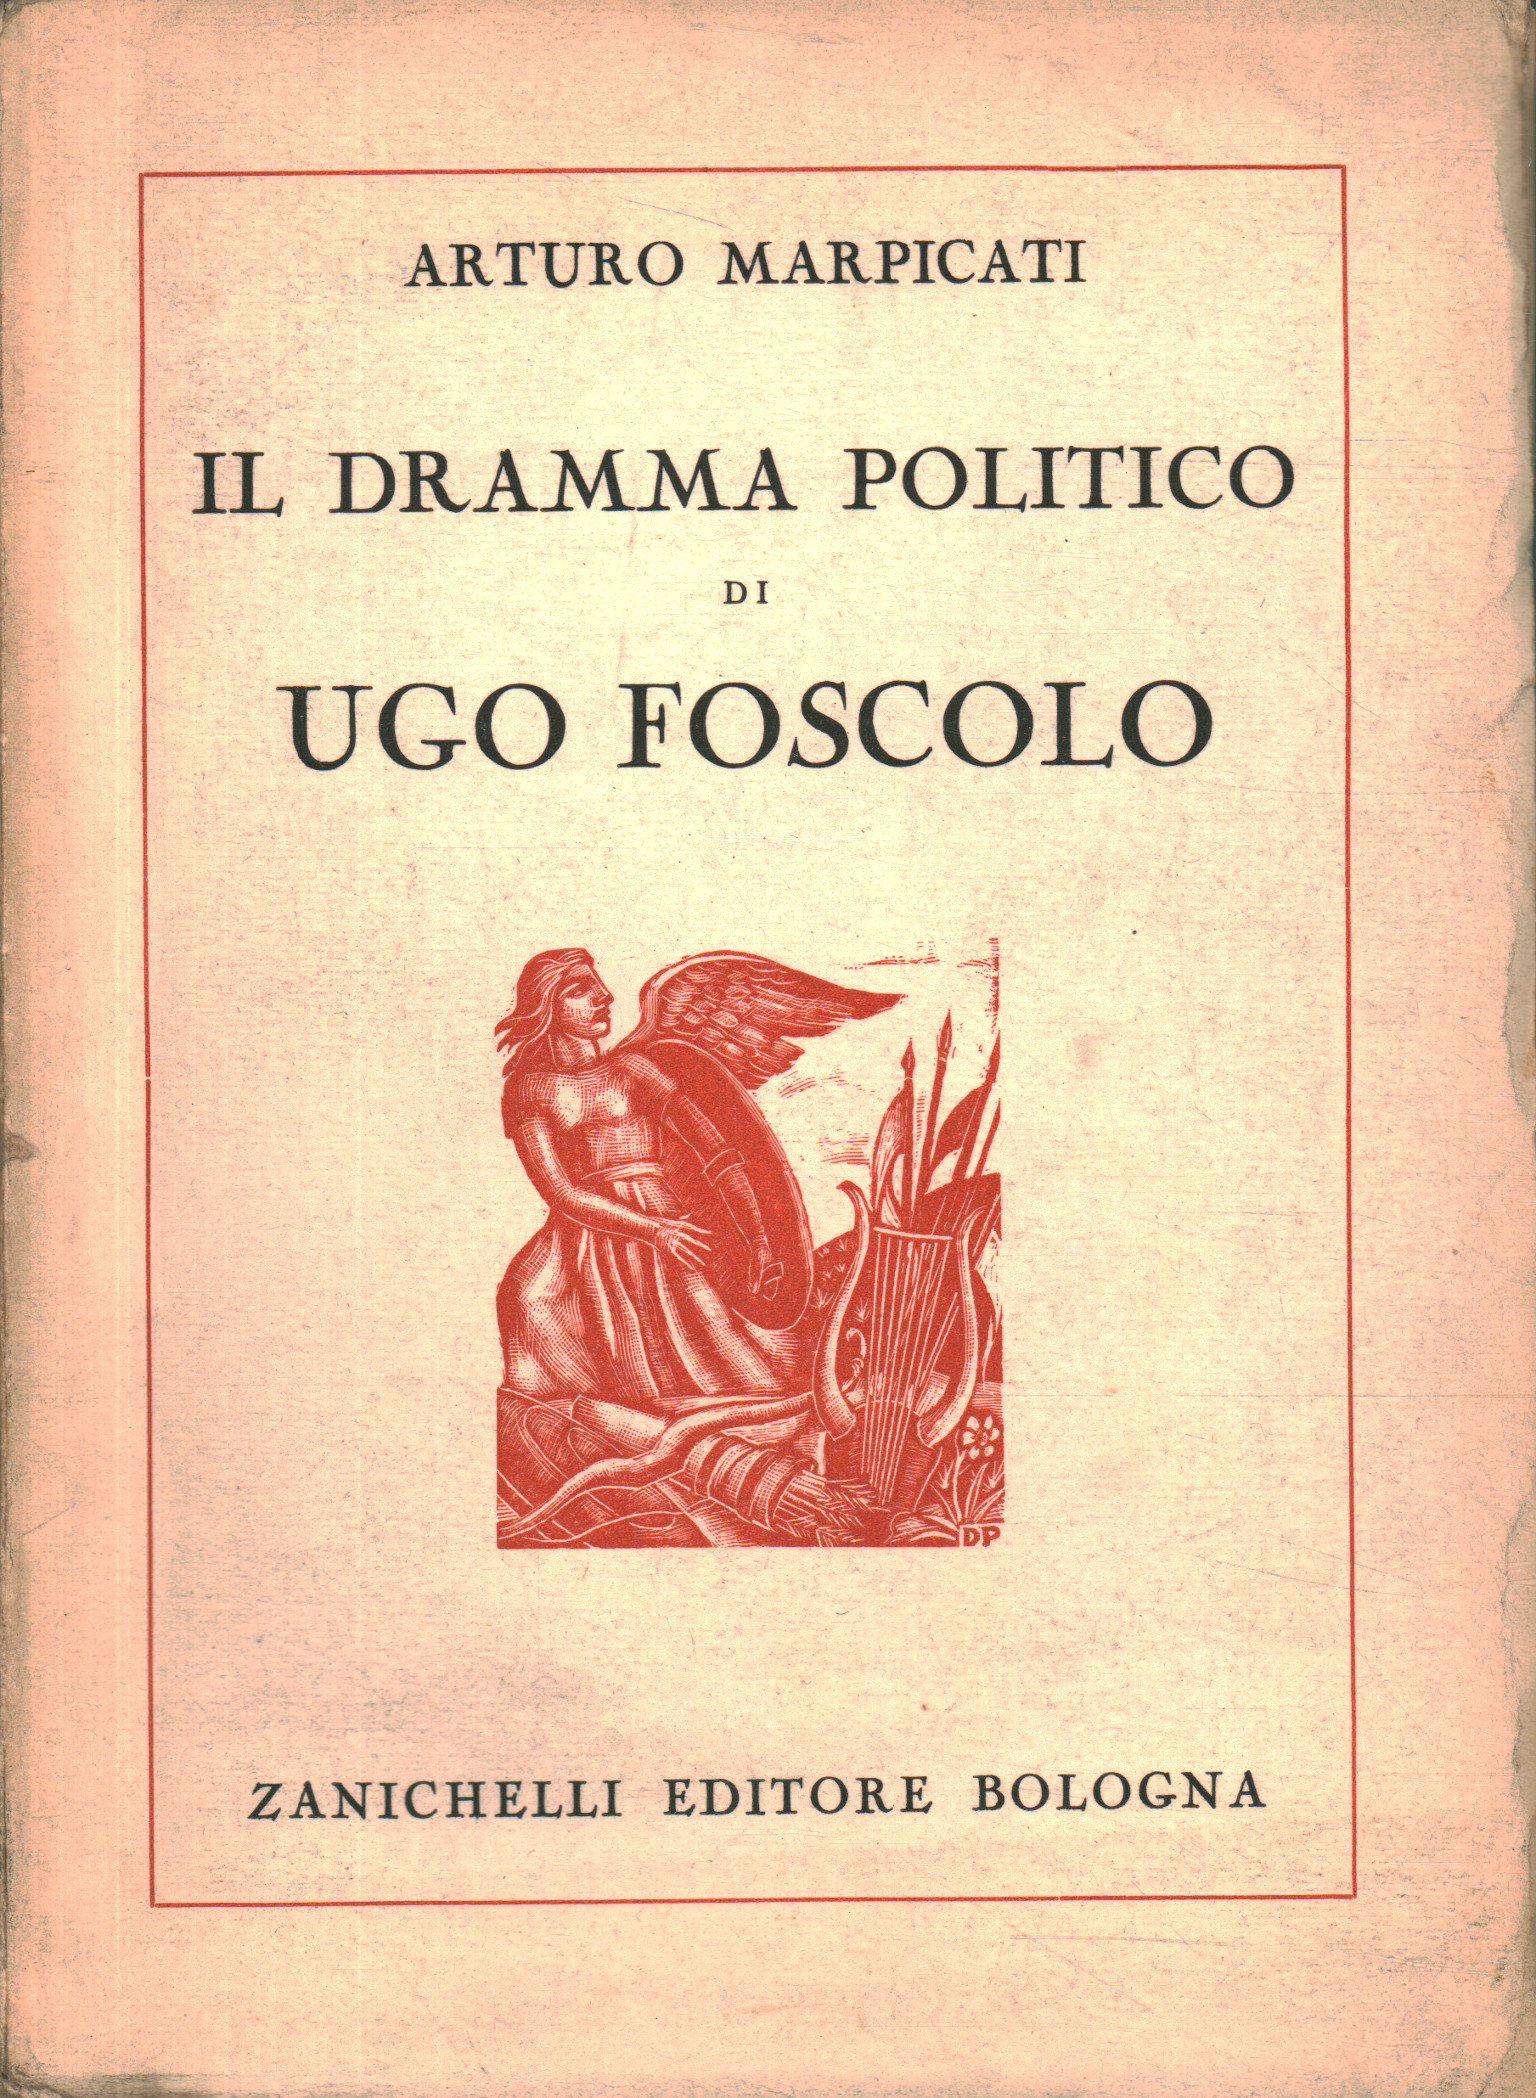 The political drama of Ugo Foscolo